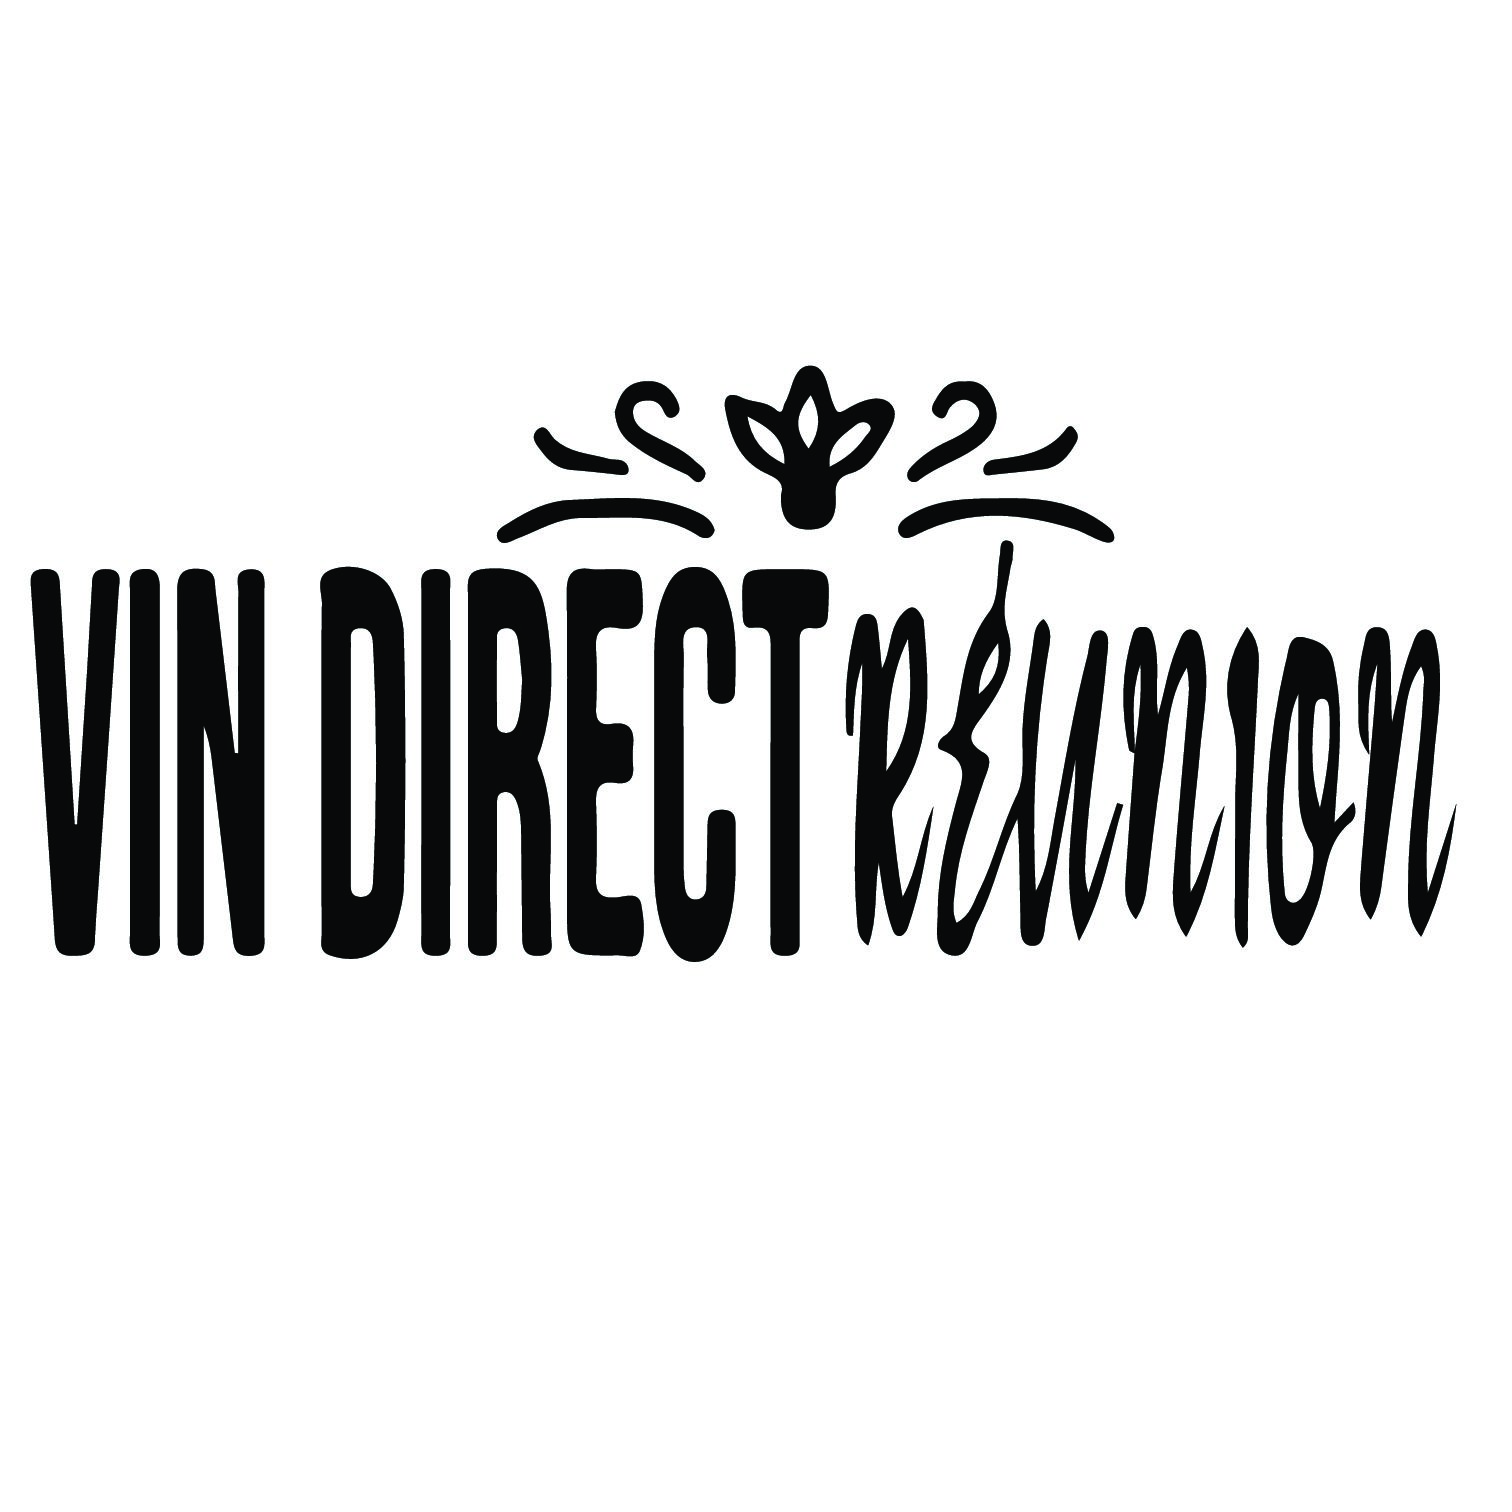 VIN DIRECT REUNION pdf 1